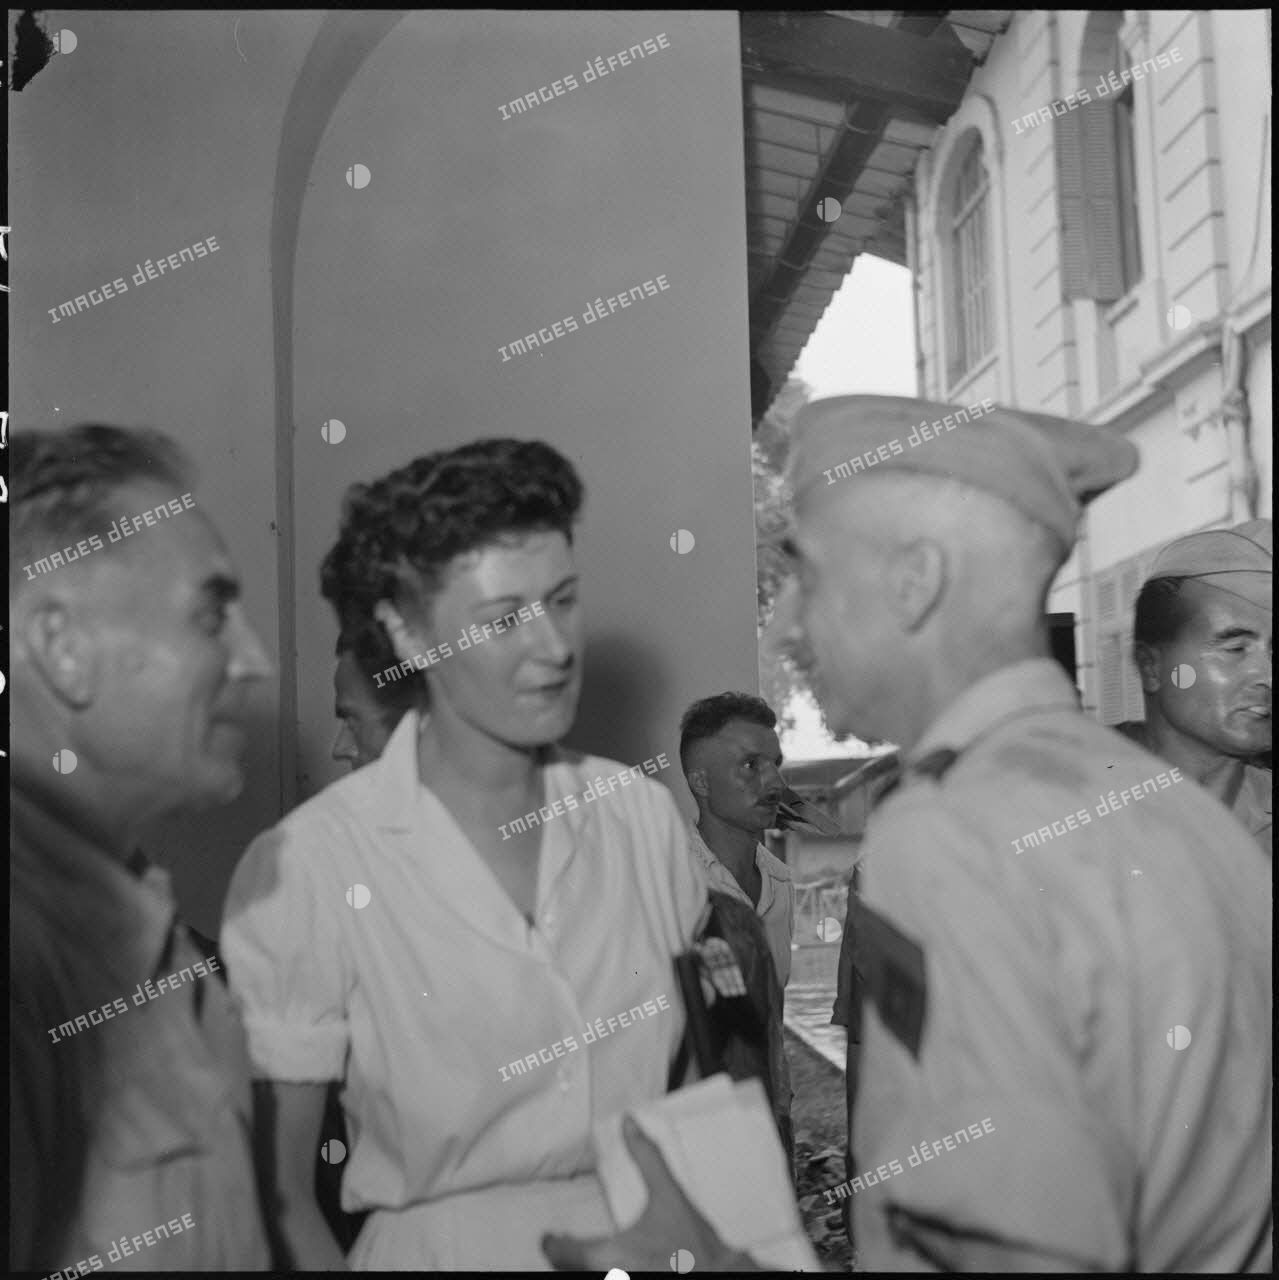 Le général de Castries en compagnie d'une infirmière lors de la visite médicale des officiers supérieurs prisonniers de guerre à Diên Biên Phu à l'hôpital militaire Lanessan de Hanoï.